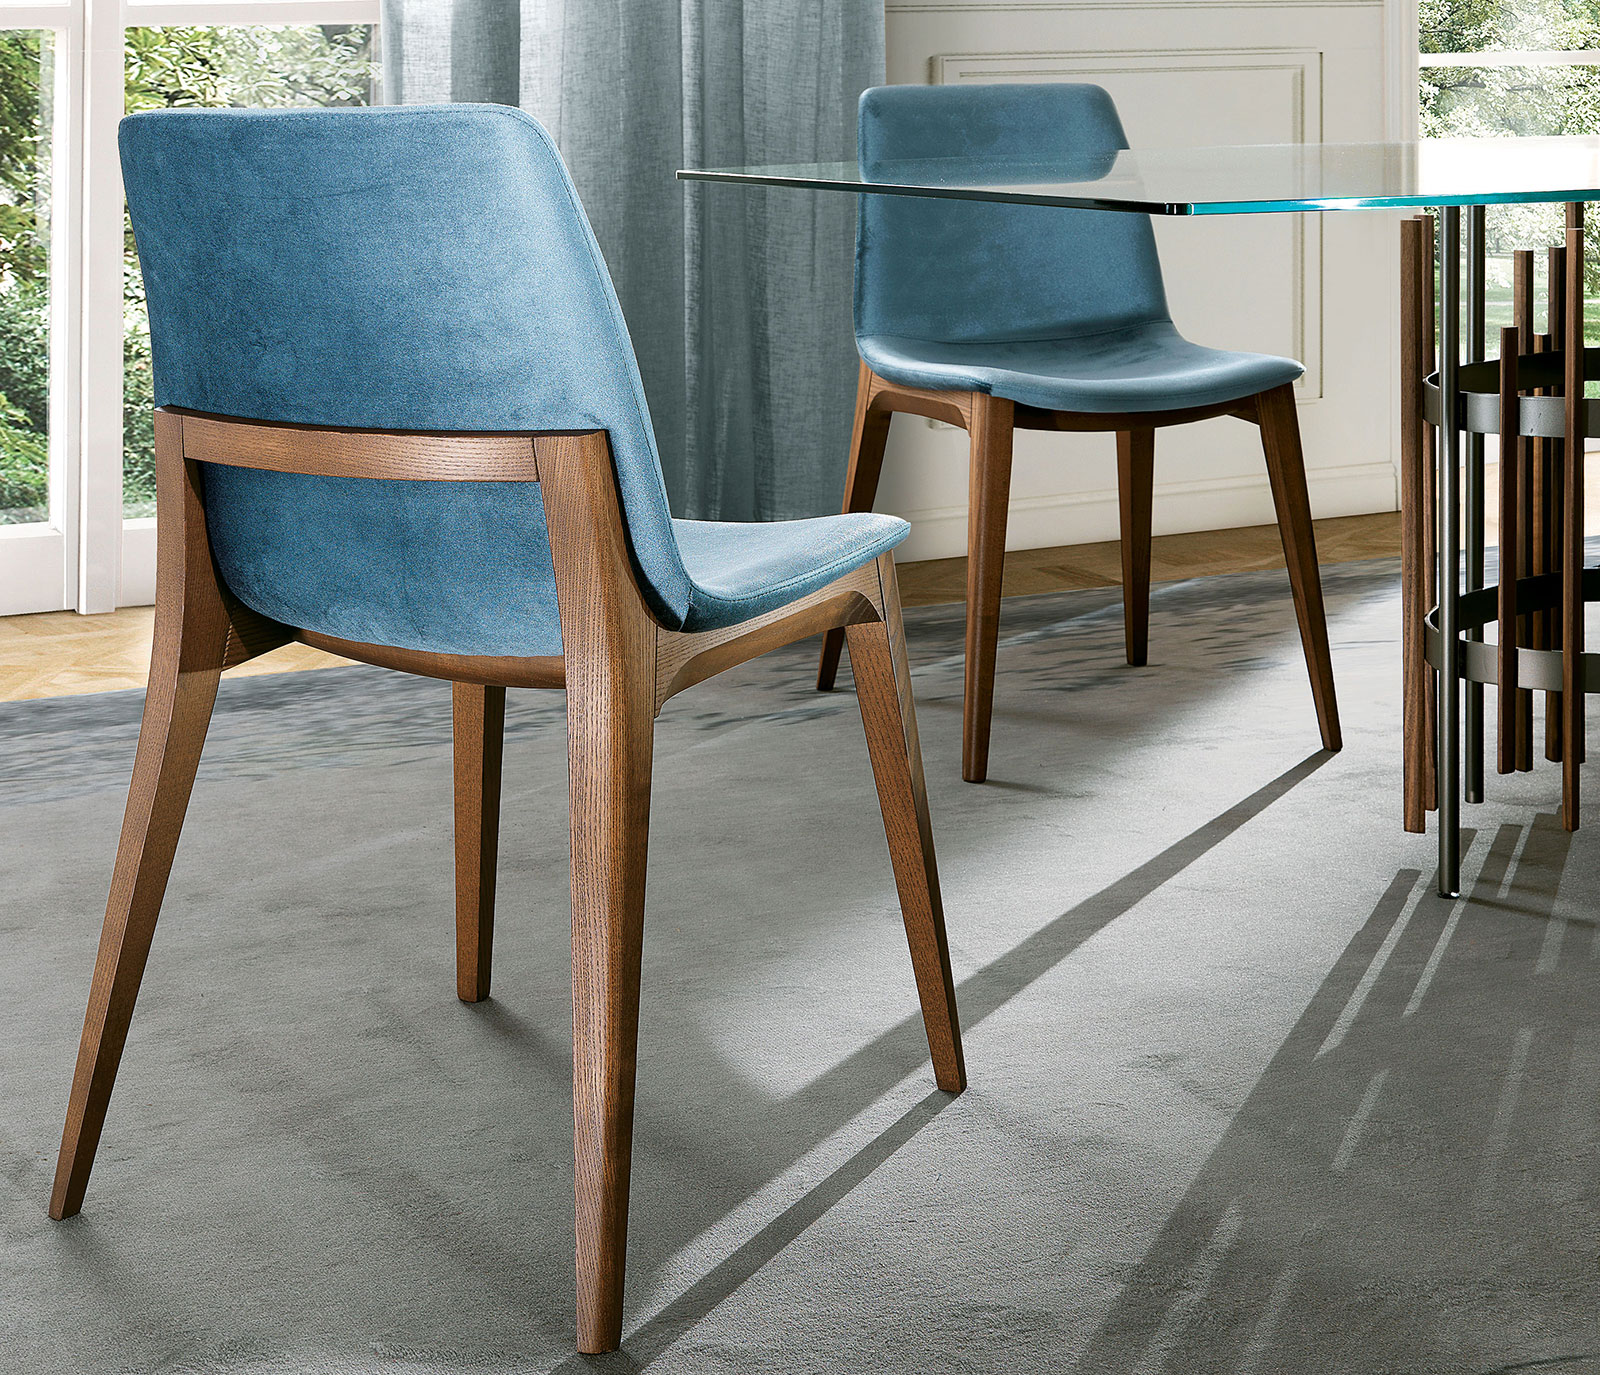 Sedia imbottita design made in Italy in legno massello. Vendita online di sedie e mobili made in Italy. Arredamento di alta qualità in consegna gratuita.